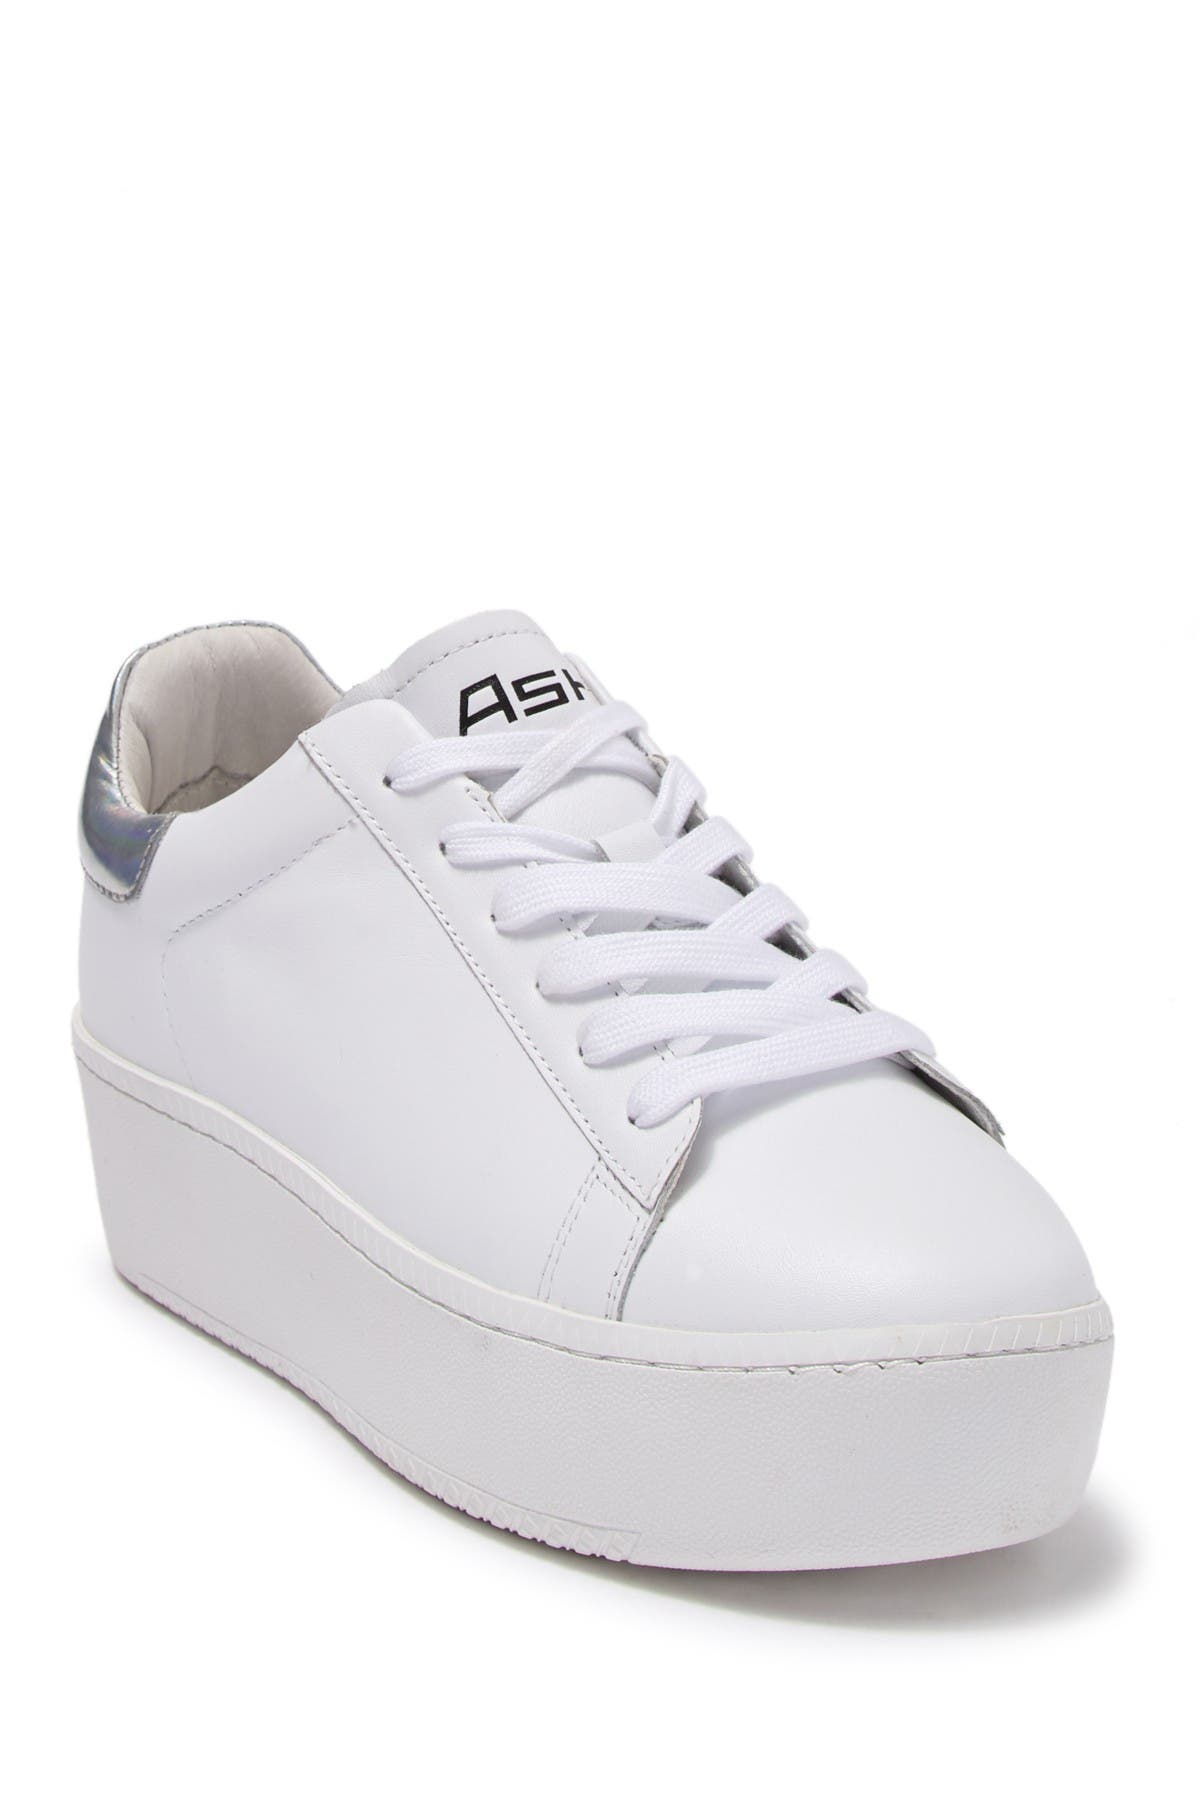 Ash | Cult Platform Sneaker | Nordstrom 